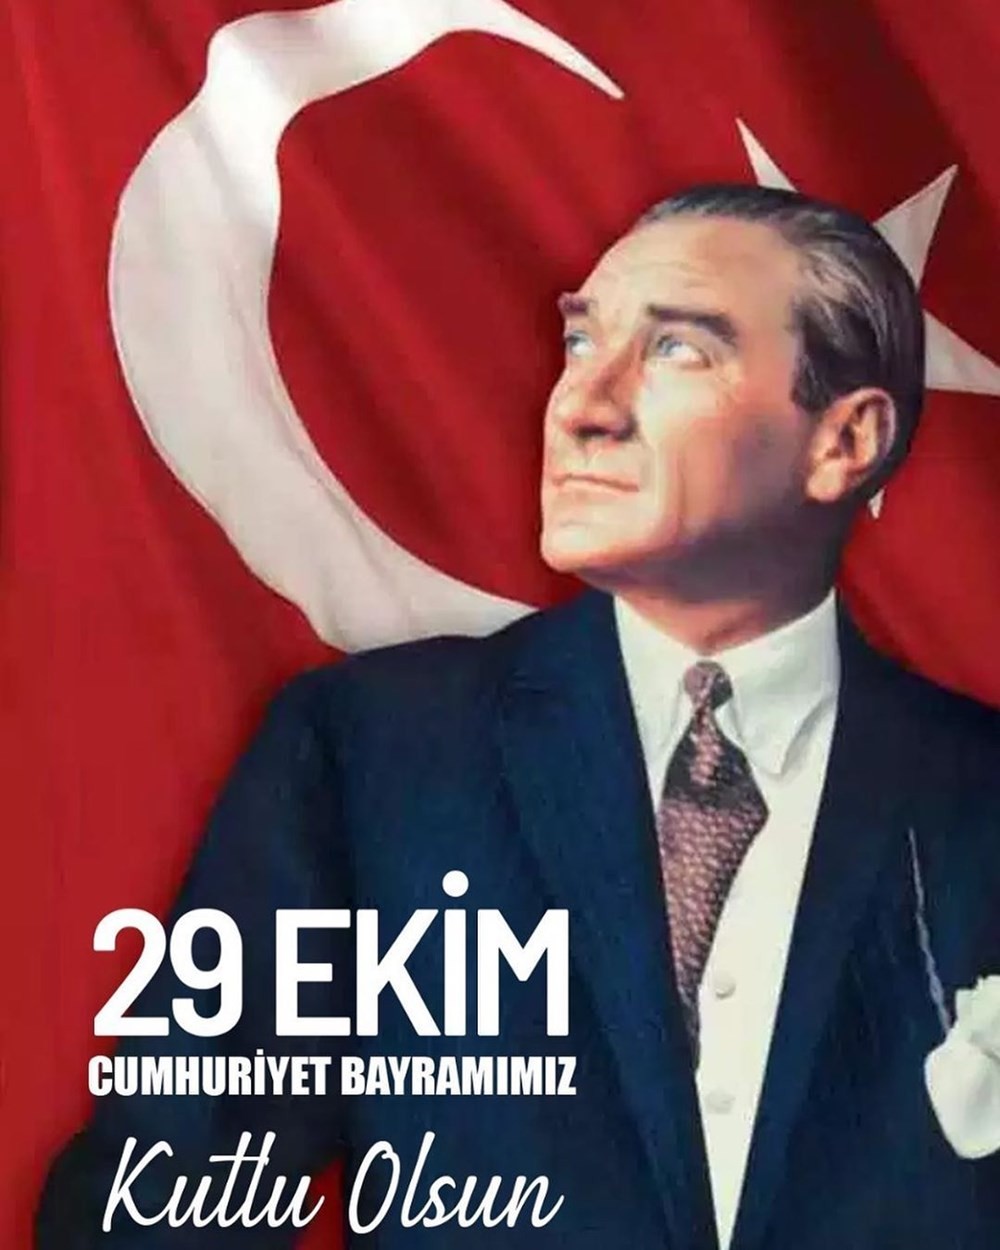 Ünlü isimlerden 29 Ekim Cumhuriyet Bayramı mesajları